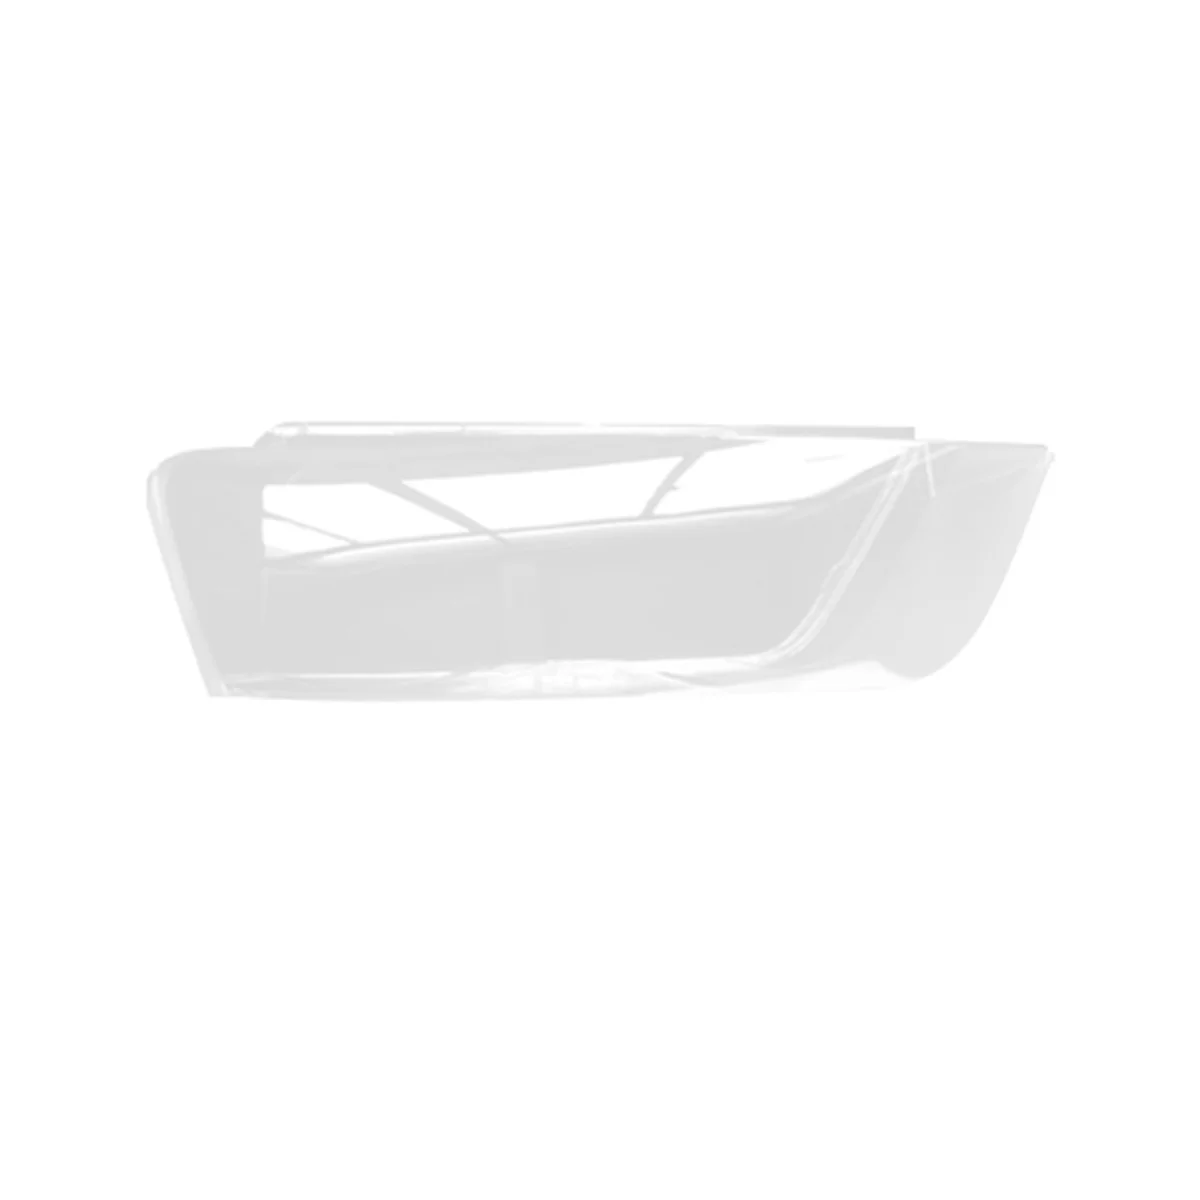 

Прозрачная крышка для передней фары автомобиля Q3